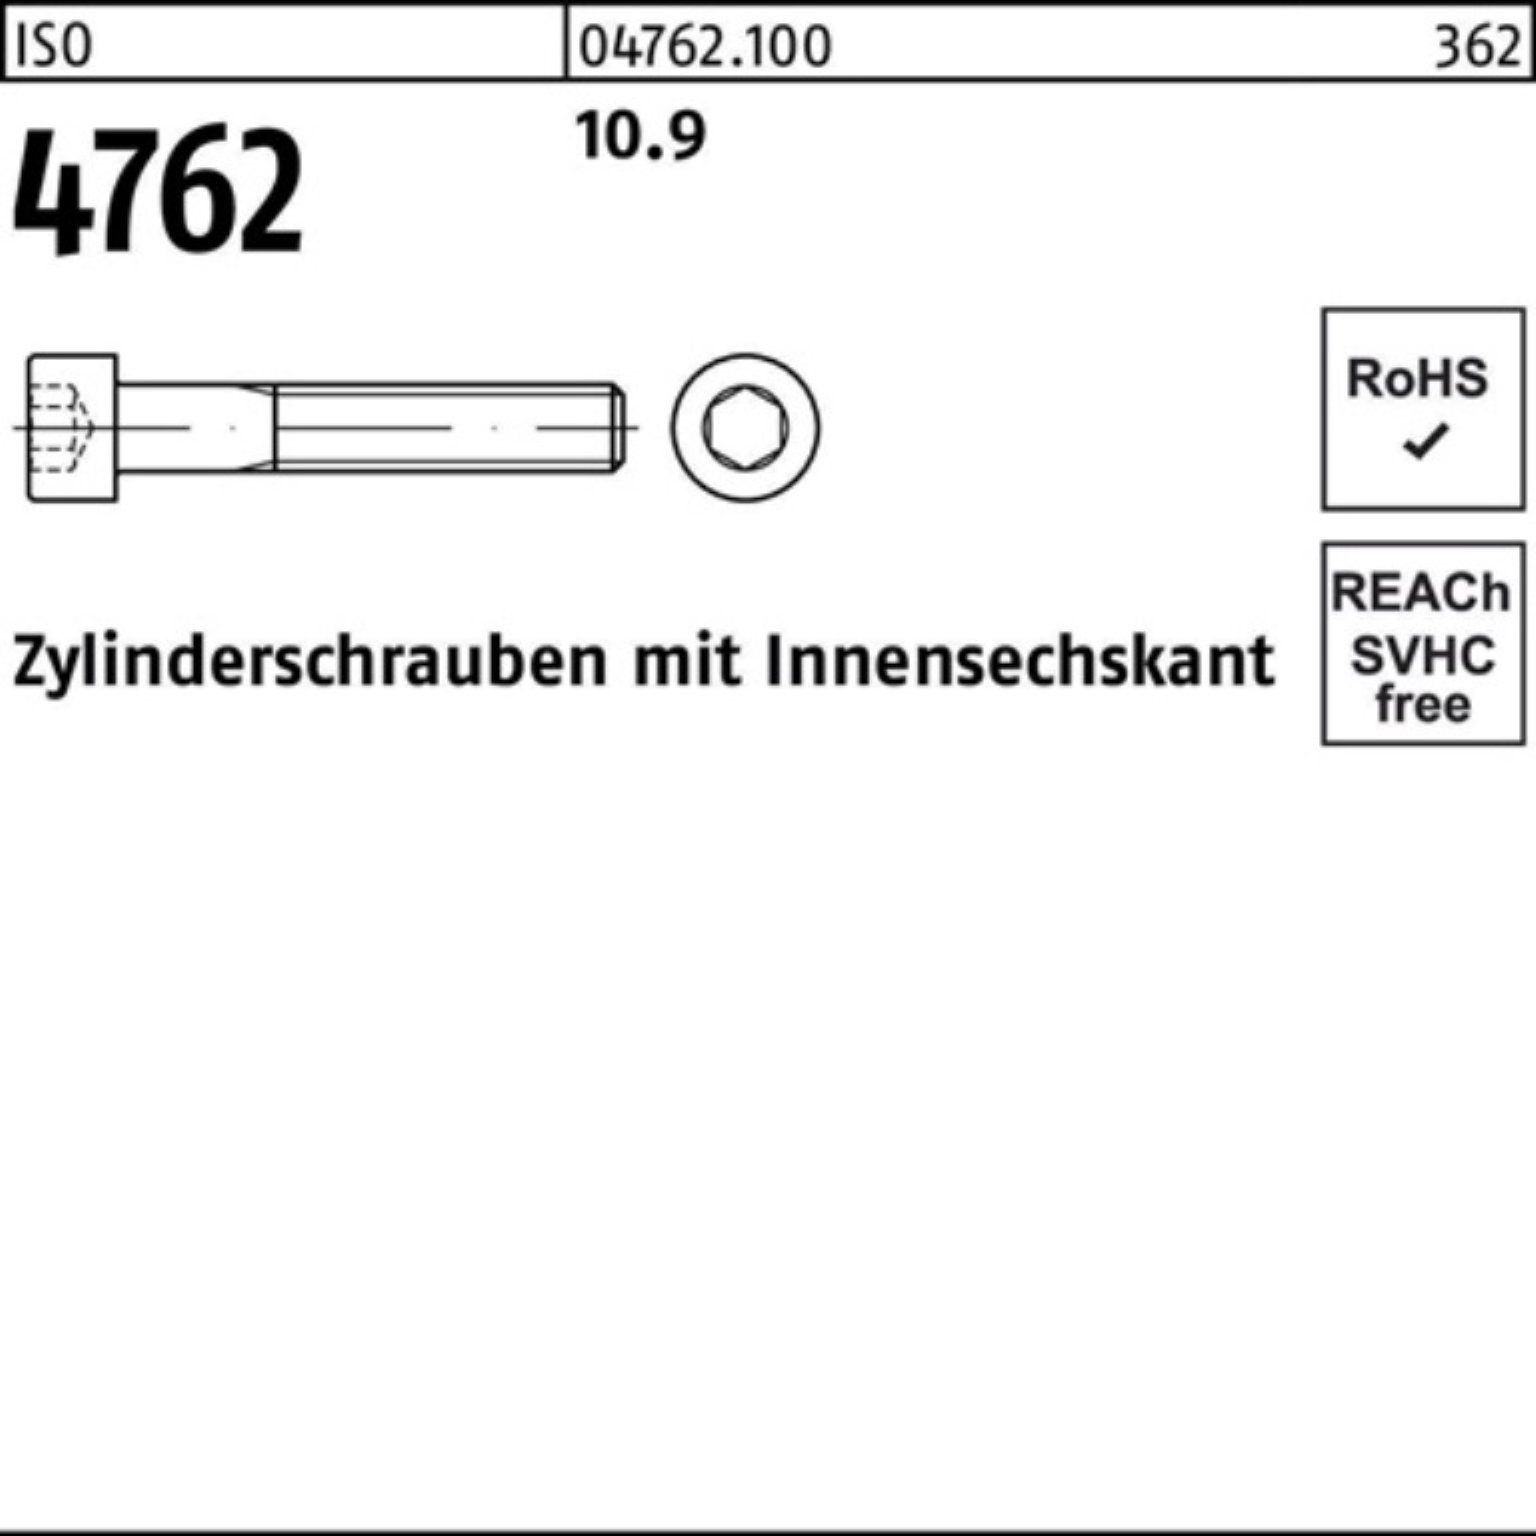 ISO Zylinderschraube Zylinderschraube Pack Stück Reyher M20x 100er 1 Innen-6kt 310 10.9 4762